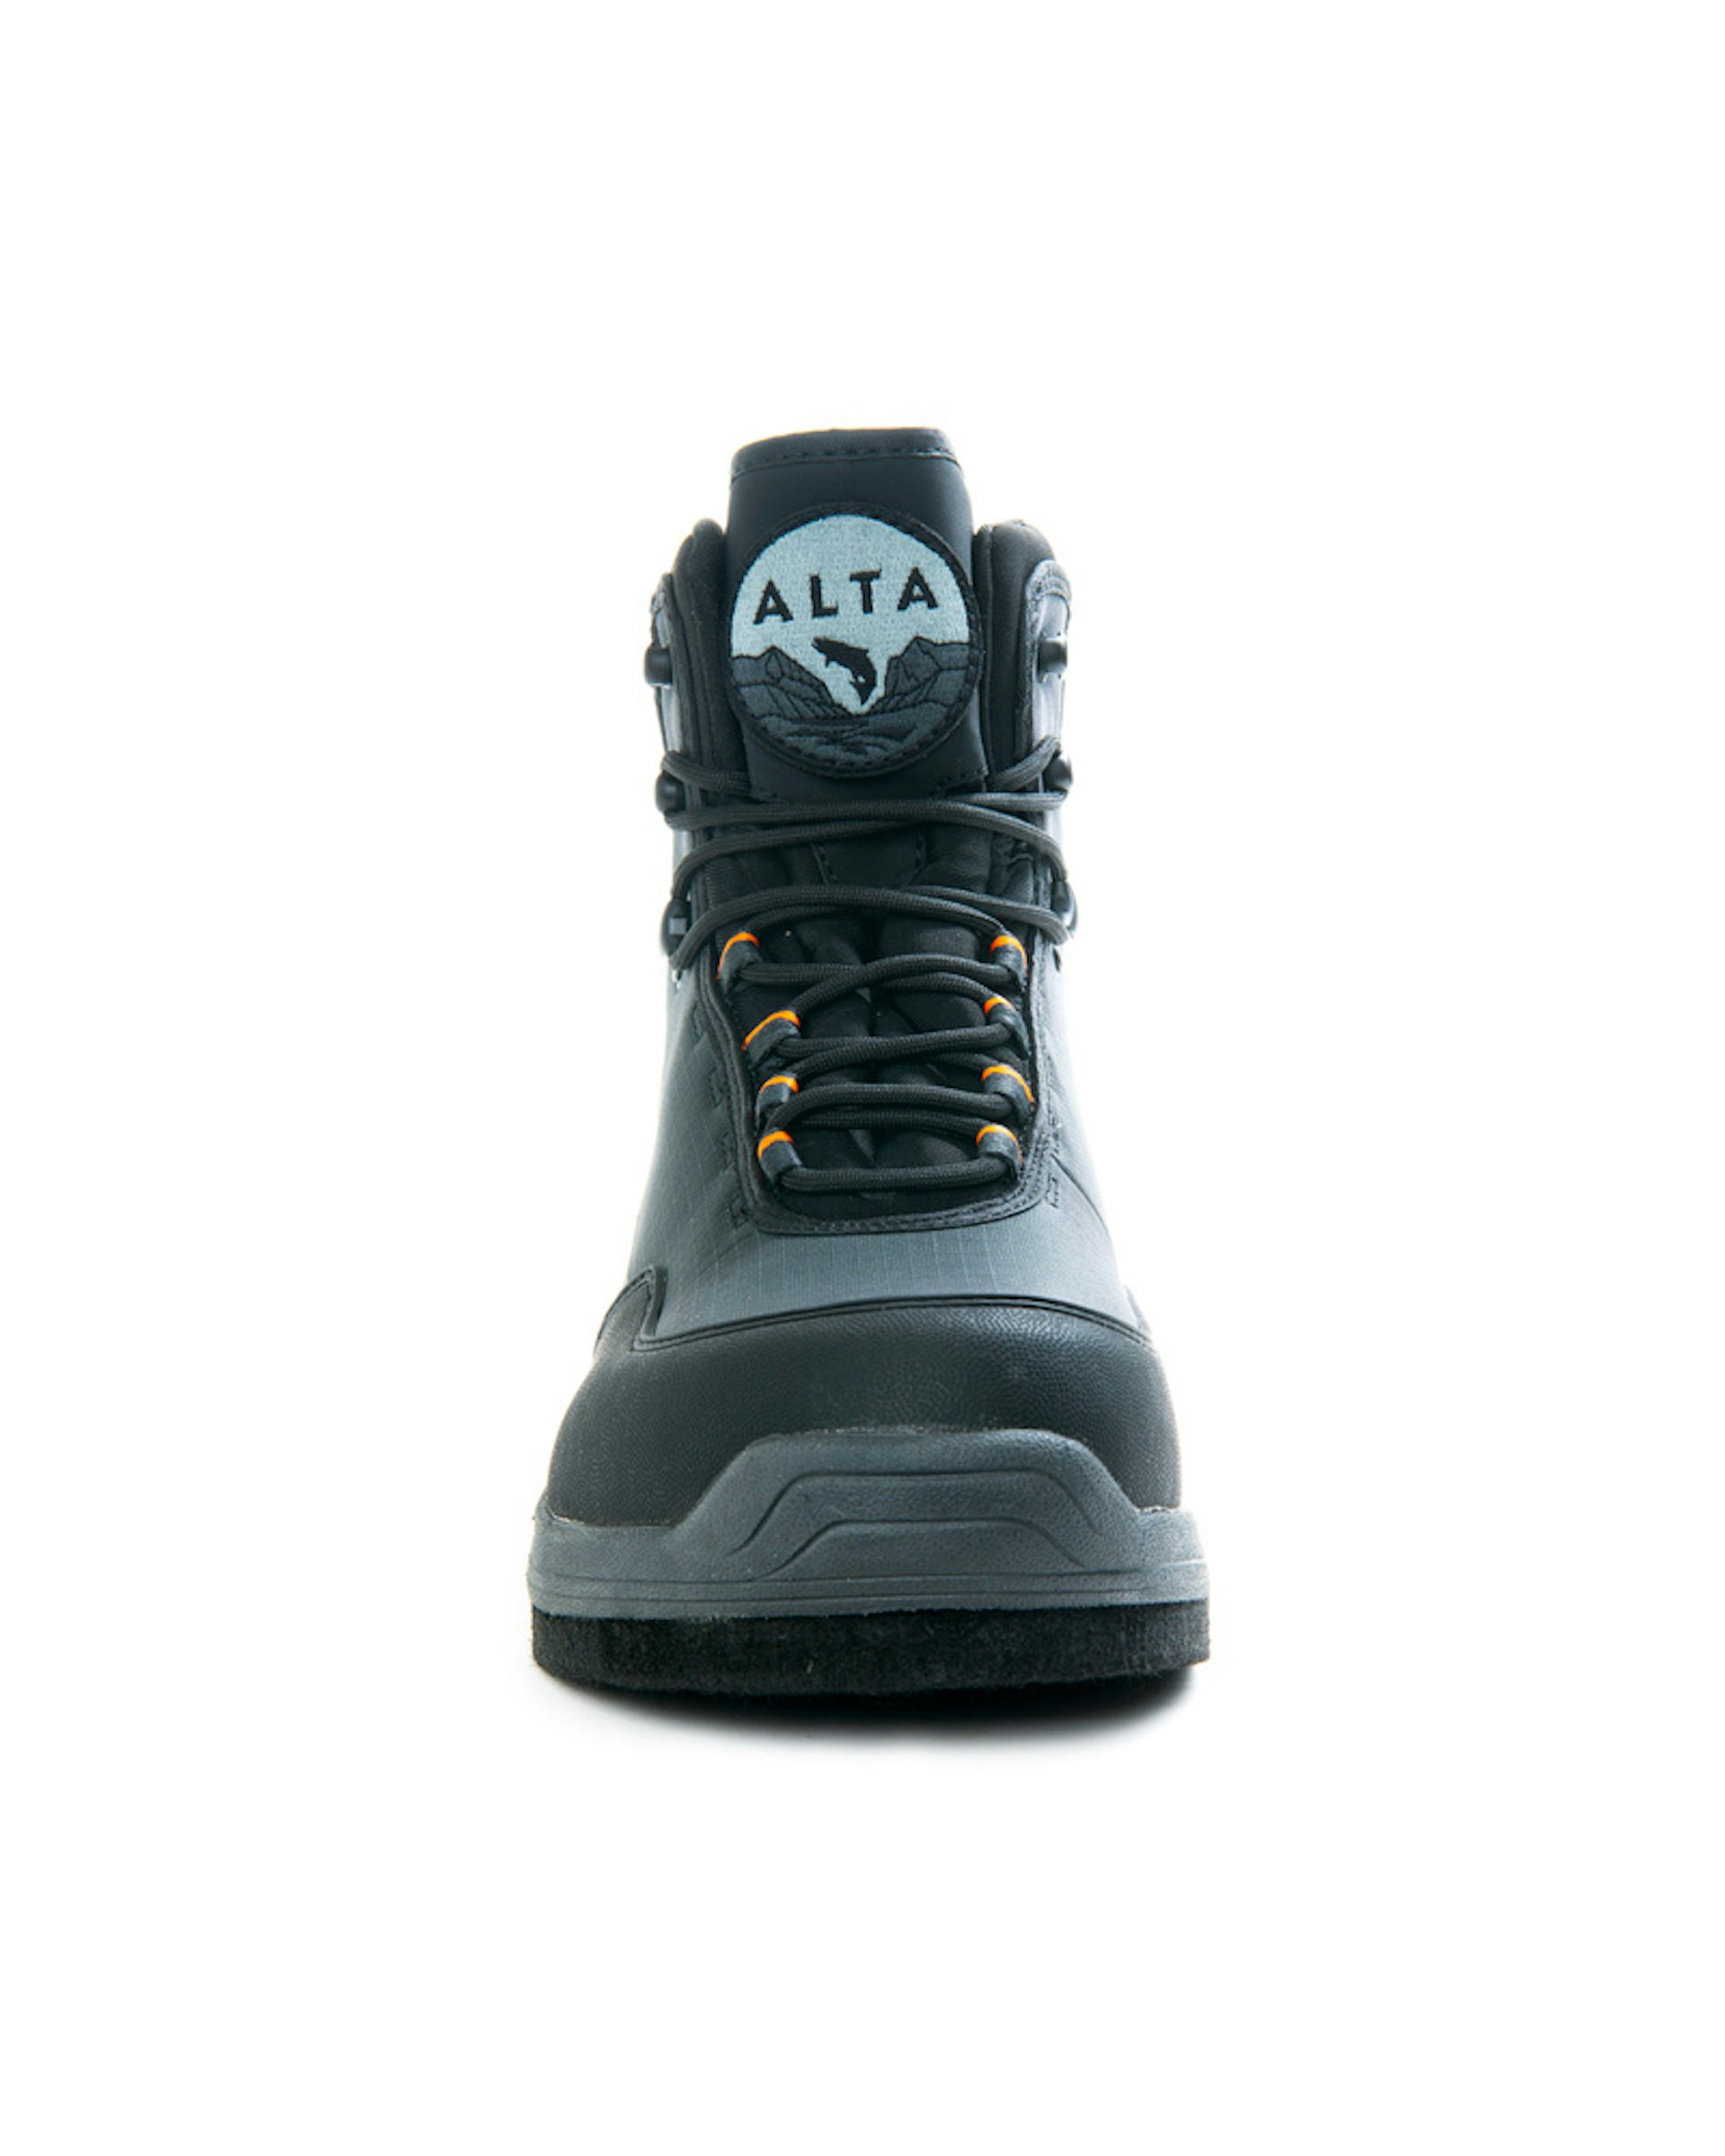 Alta NGx Boot Felt US9/EUR42/UK8 (bilde 4 av 6)